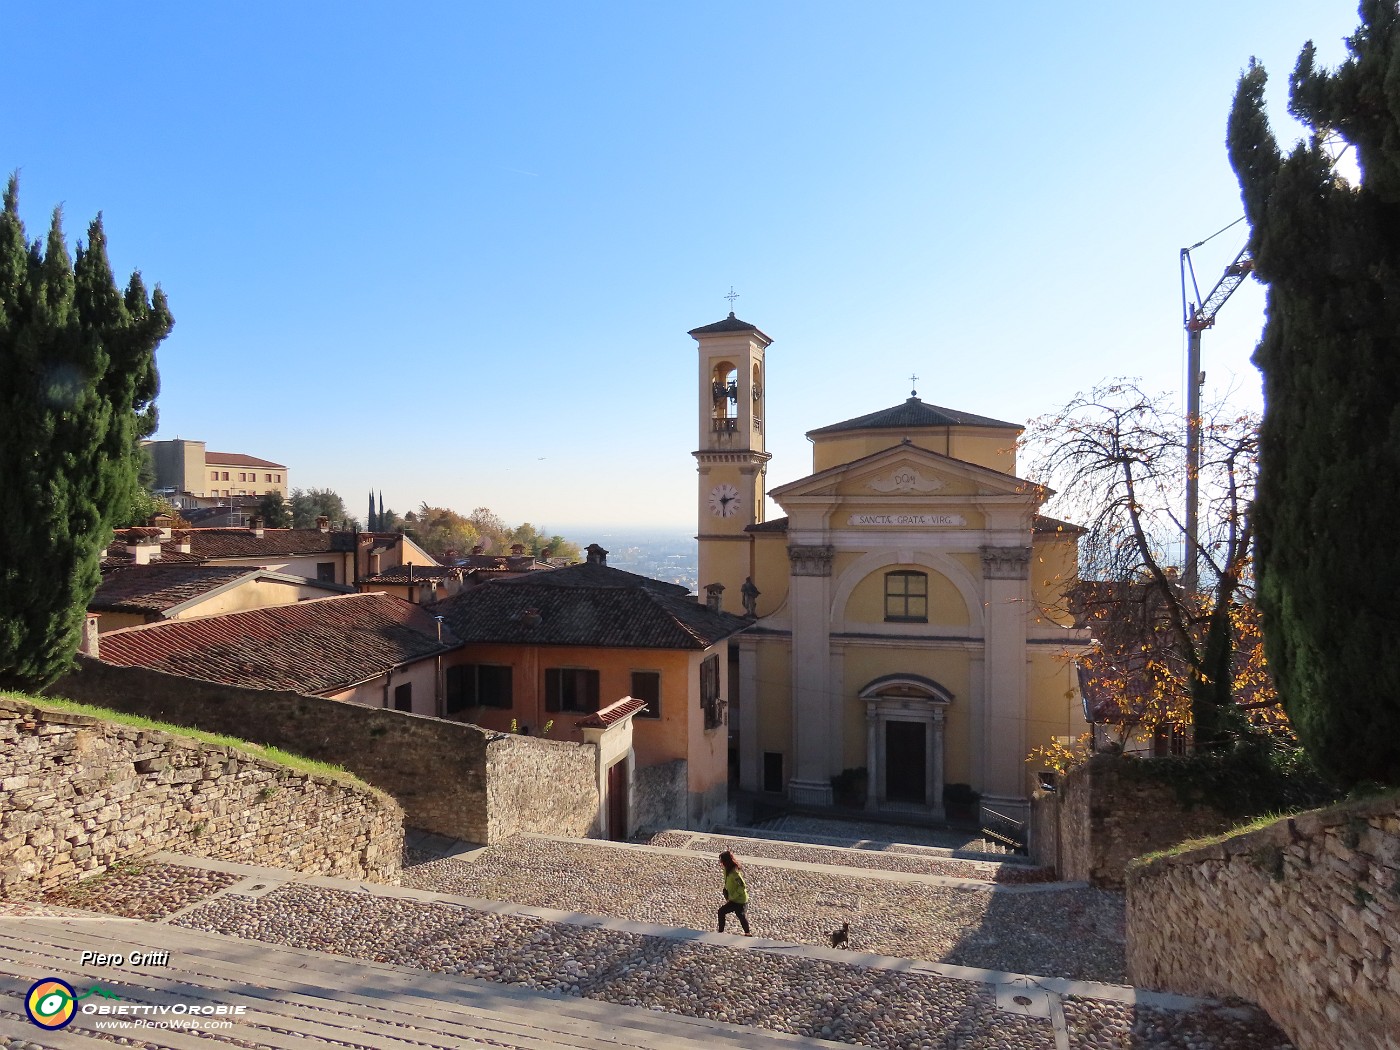 40 Chiesa di Santa Grata in Borgo Canale.JPG